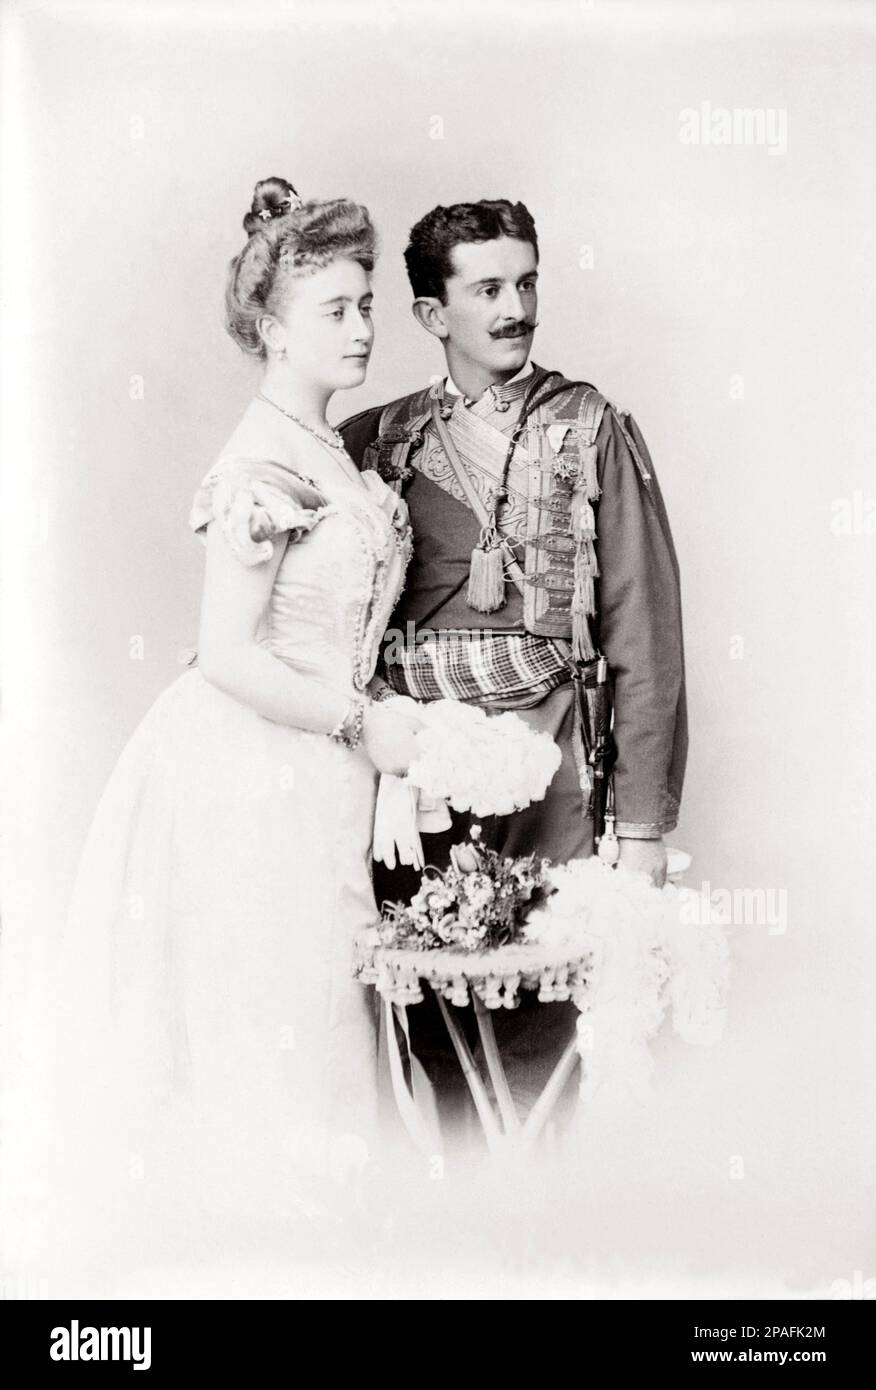 1895 aprox. , Montenegro : El príncipe heredero DANILO de MONTENEGRO Petrovic-Njegos ( 1871 - 1939 ) El día de la boda con la duquesa JUTTA de Mecklemburgo ( 1880-1946 ) hija de Adolf Friedrich V, gran duque de Mecklemburgo-Strelitz, pero el matrimonio fue sin hijos . Después de que abdicó en 1921 pasó la mayor parte de su vida viviendo en Nice.Son del rey Nicolás I y la reina Milena de Montenegro. Desde el 1 de marzo de 1921 hasta el 7 de marzo de 1921 Danilo fue el auto-asumido rey de Montenegro liderando un gobierno no reconocido en el exilio. El 7 1921 de marzo por razones que aún no están claras Danilo abdicó Foto de stock